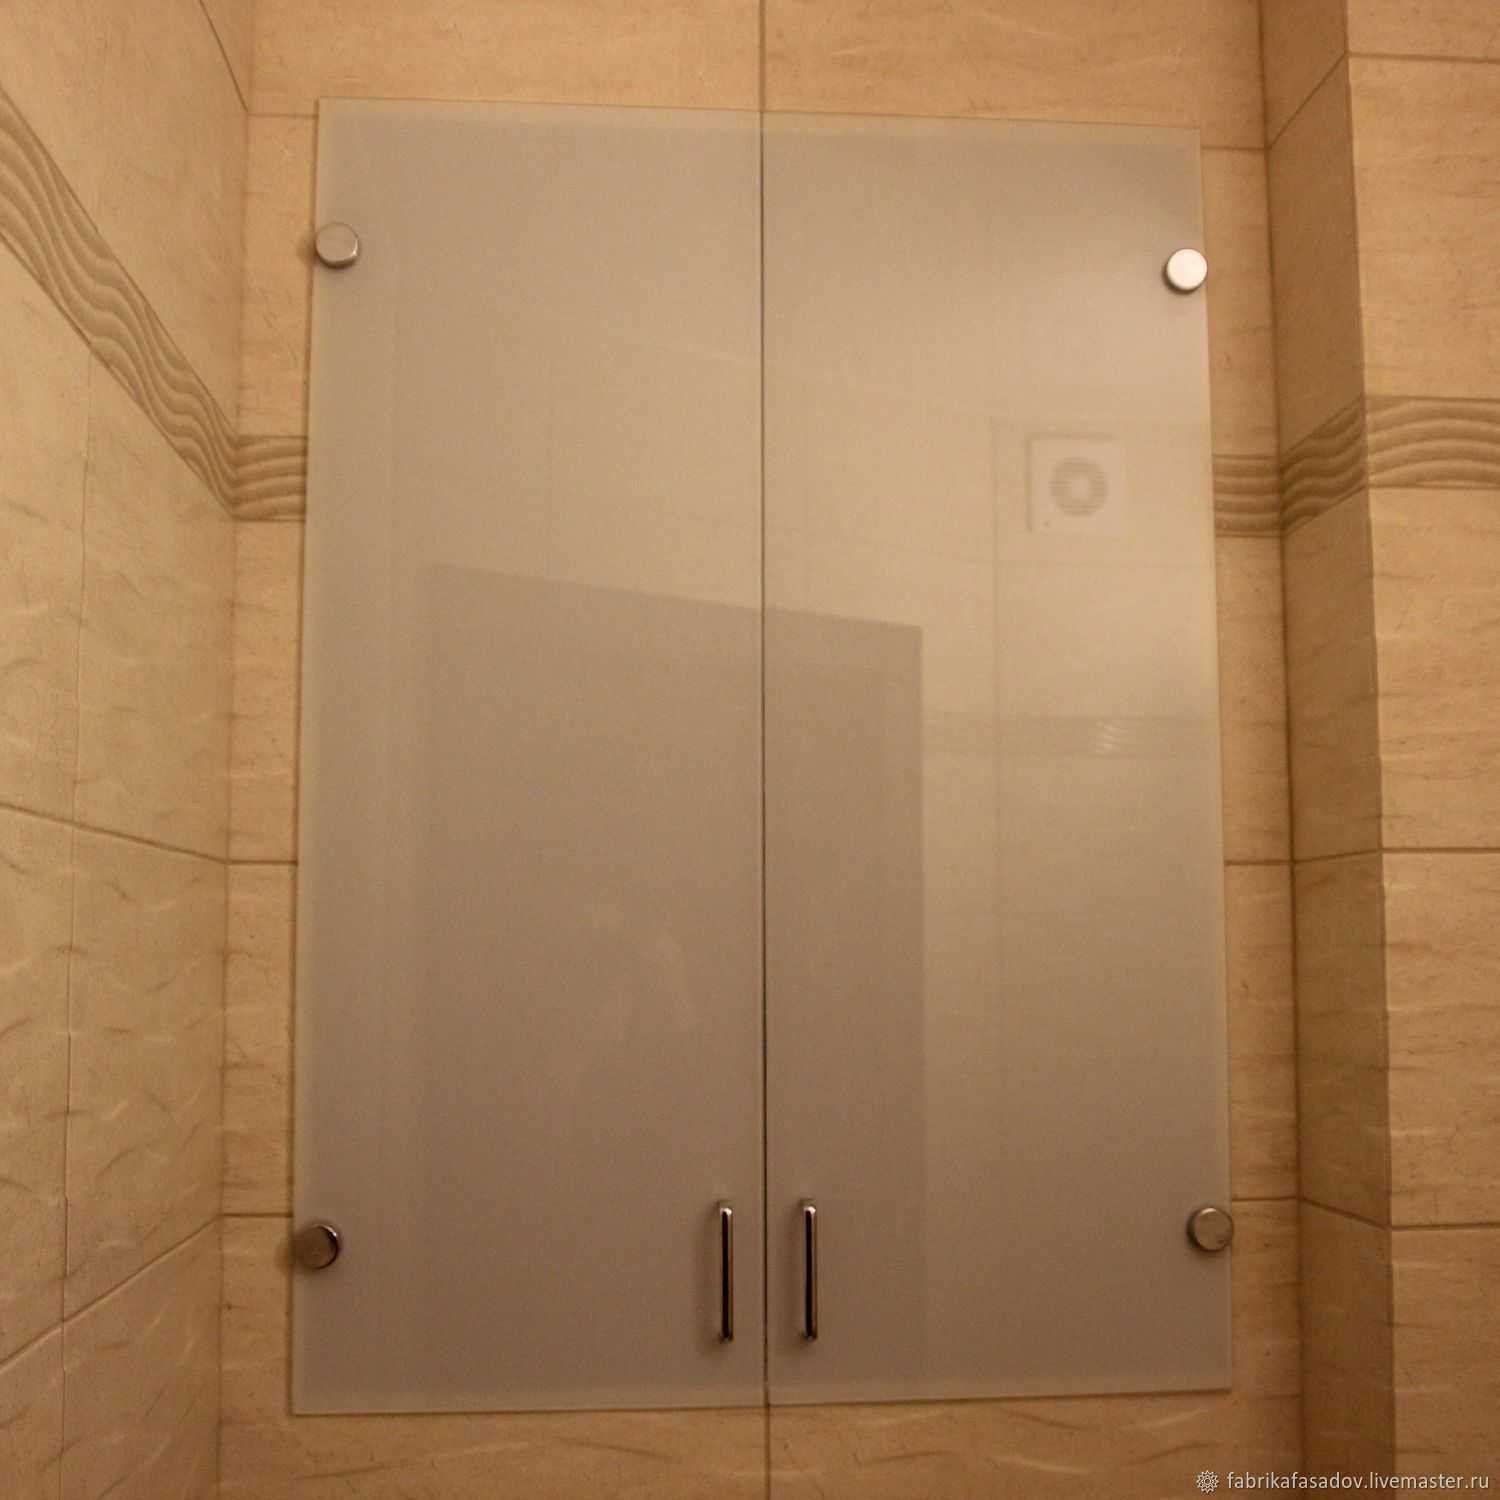 Как сделать шкаф в туалет, из каких материалов Какие фасады можно использовать, как установить и прикрепить полки, дверки